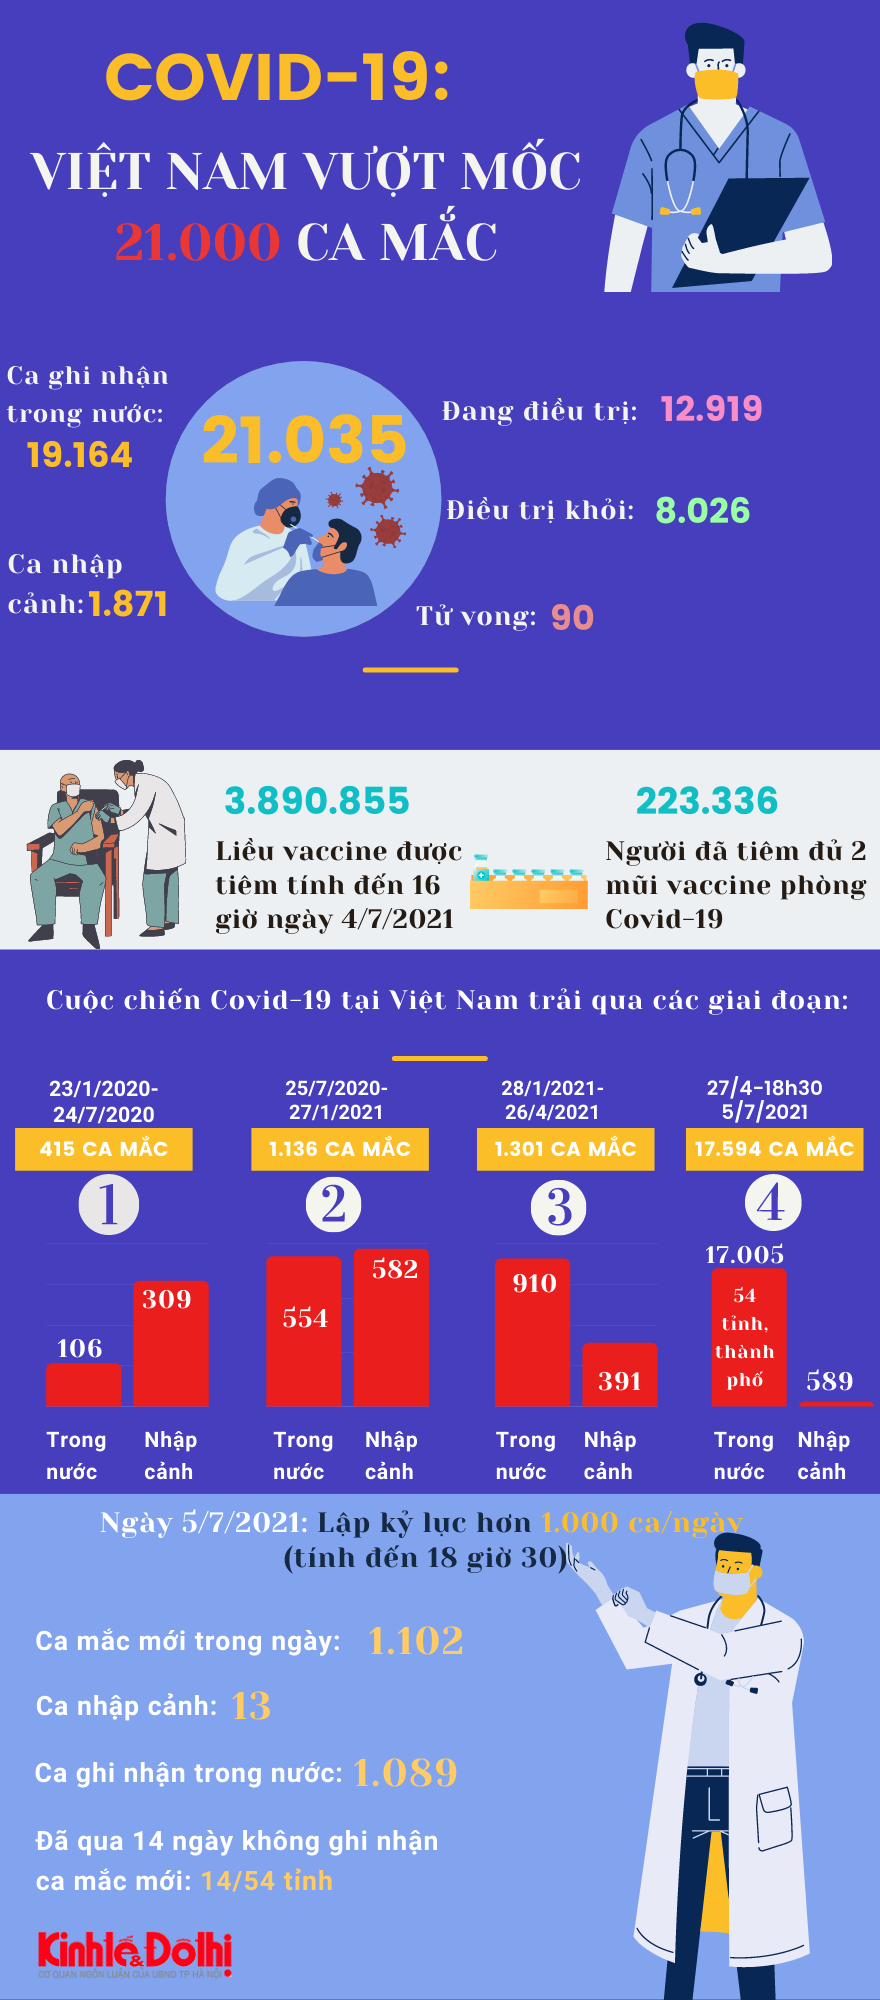 [Infographic] Việt Nam vượt mốc 21.000 ca mắc Covid-19 - Ảnh 1